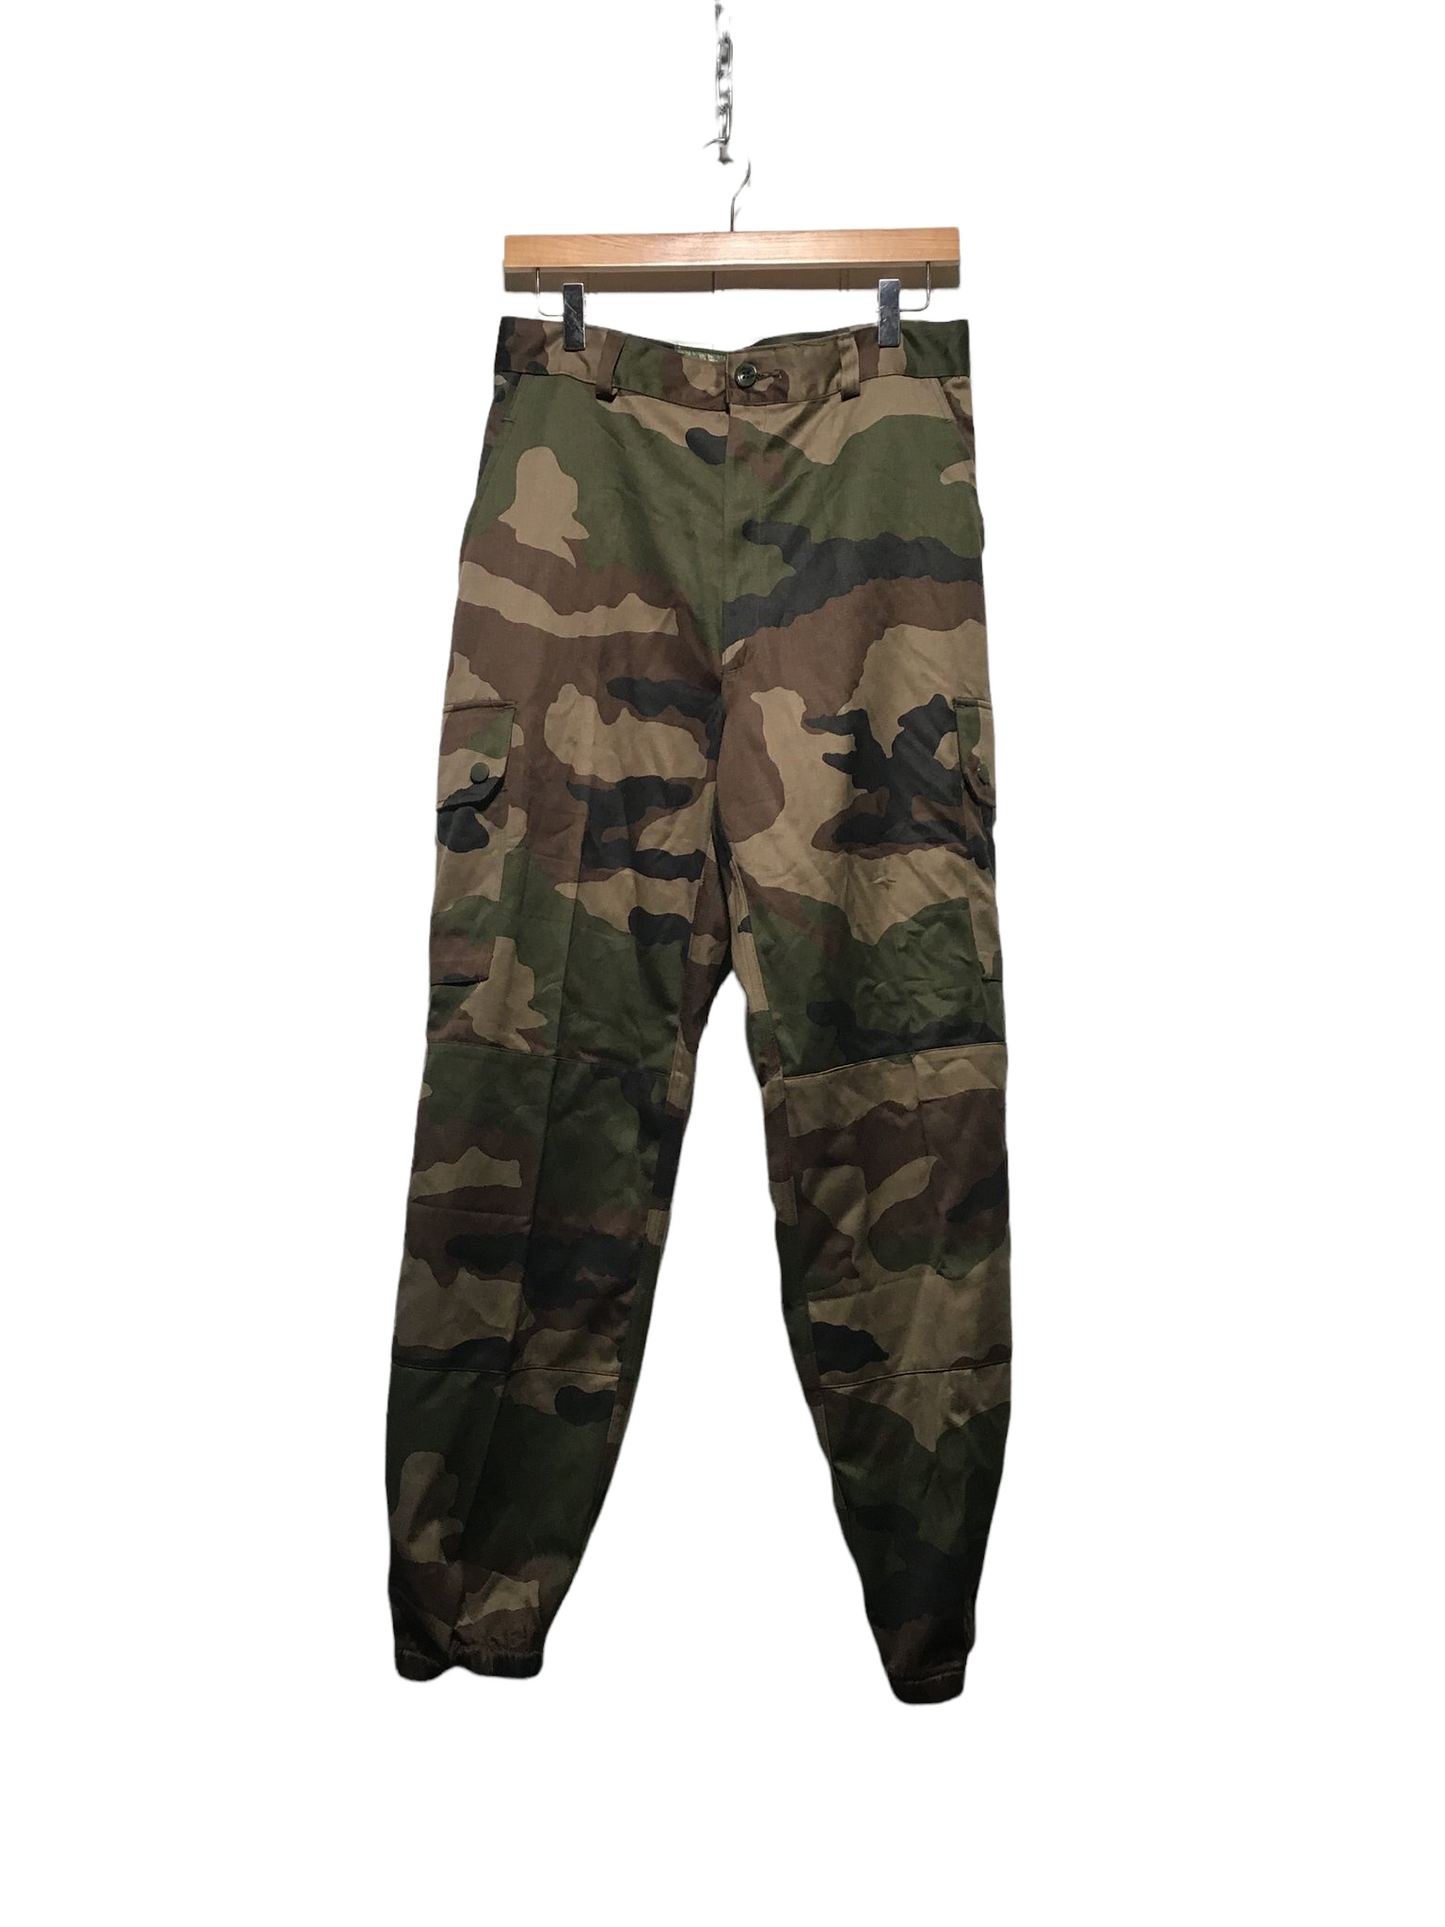 Army Pants (30X29)